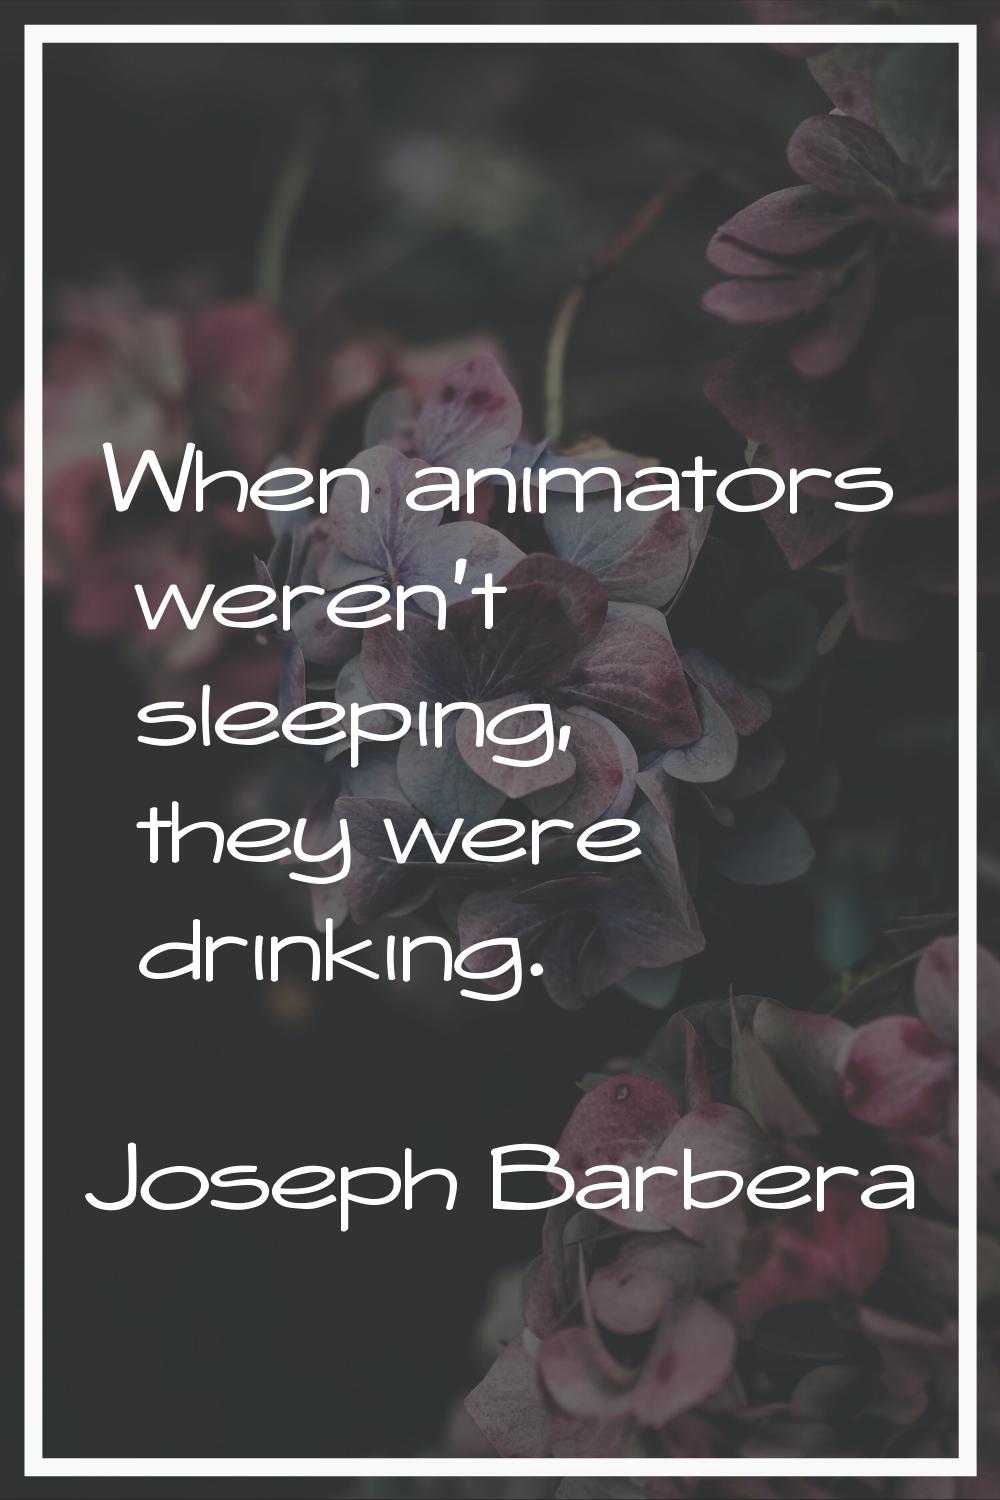 When animators weren't sleeping, they were drinking.